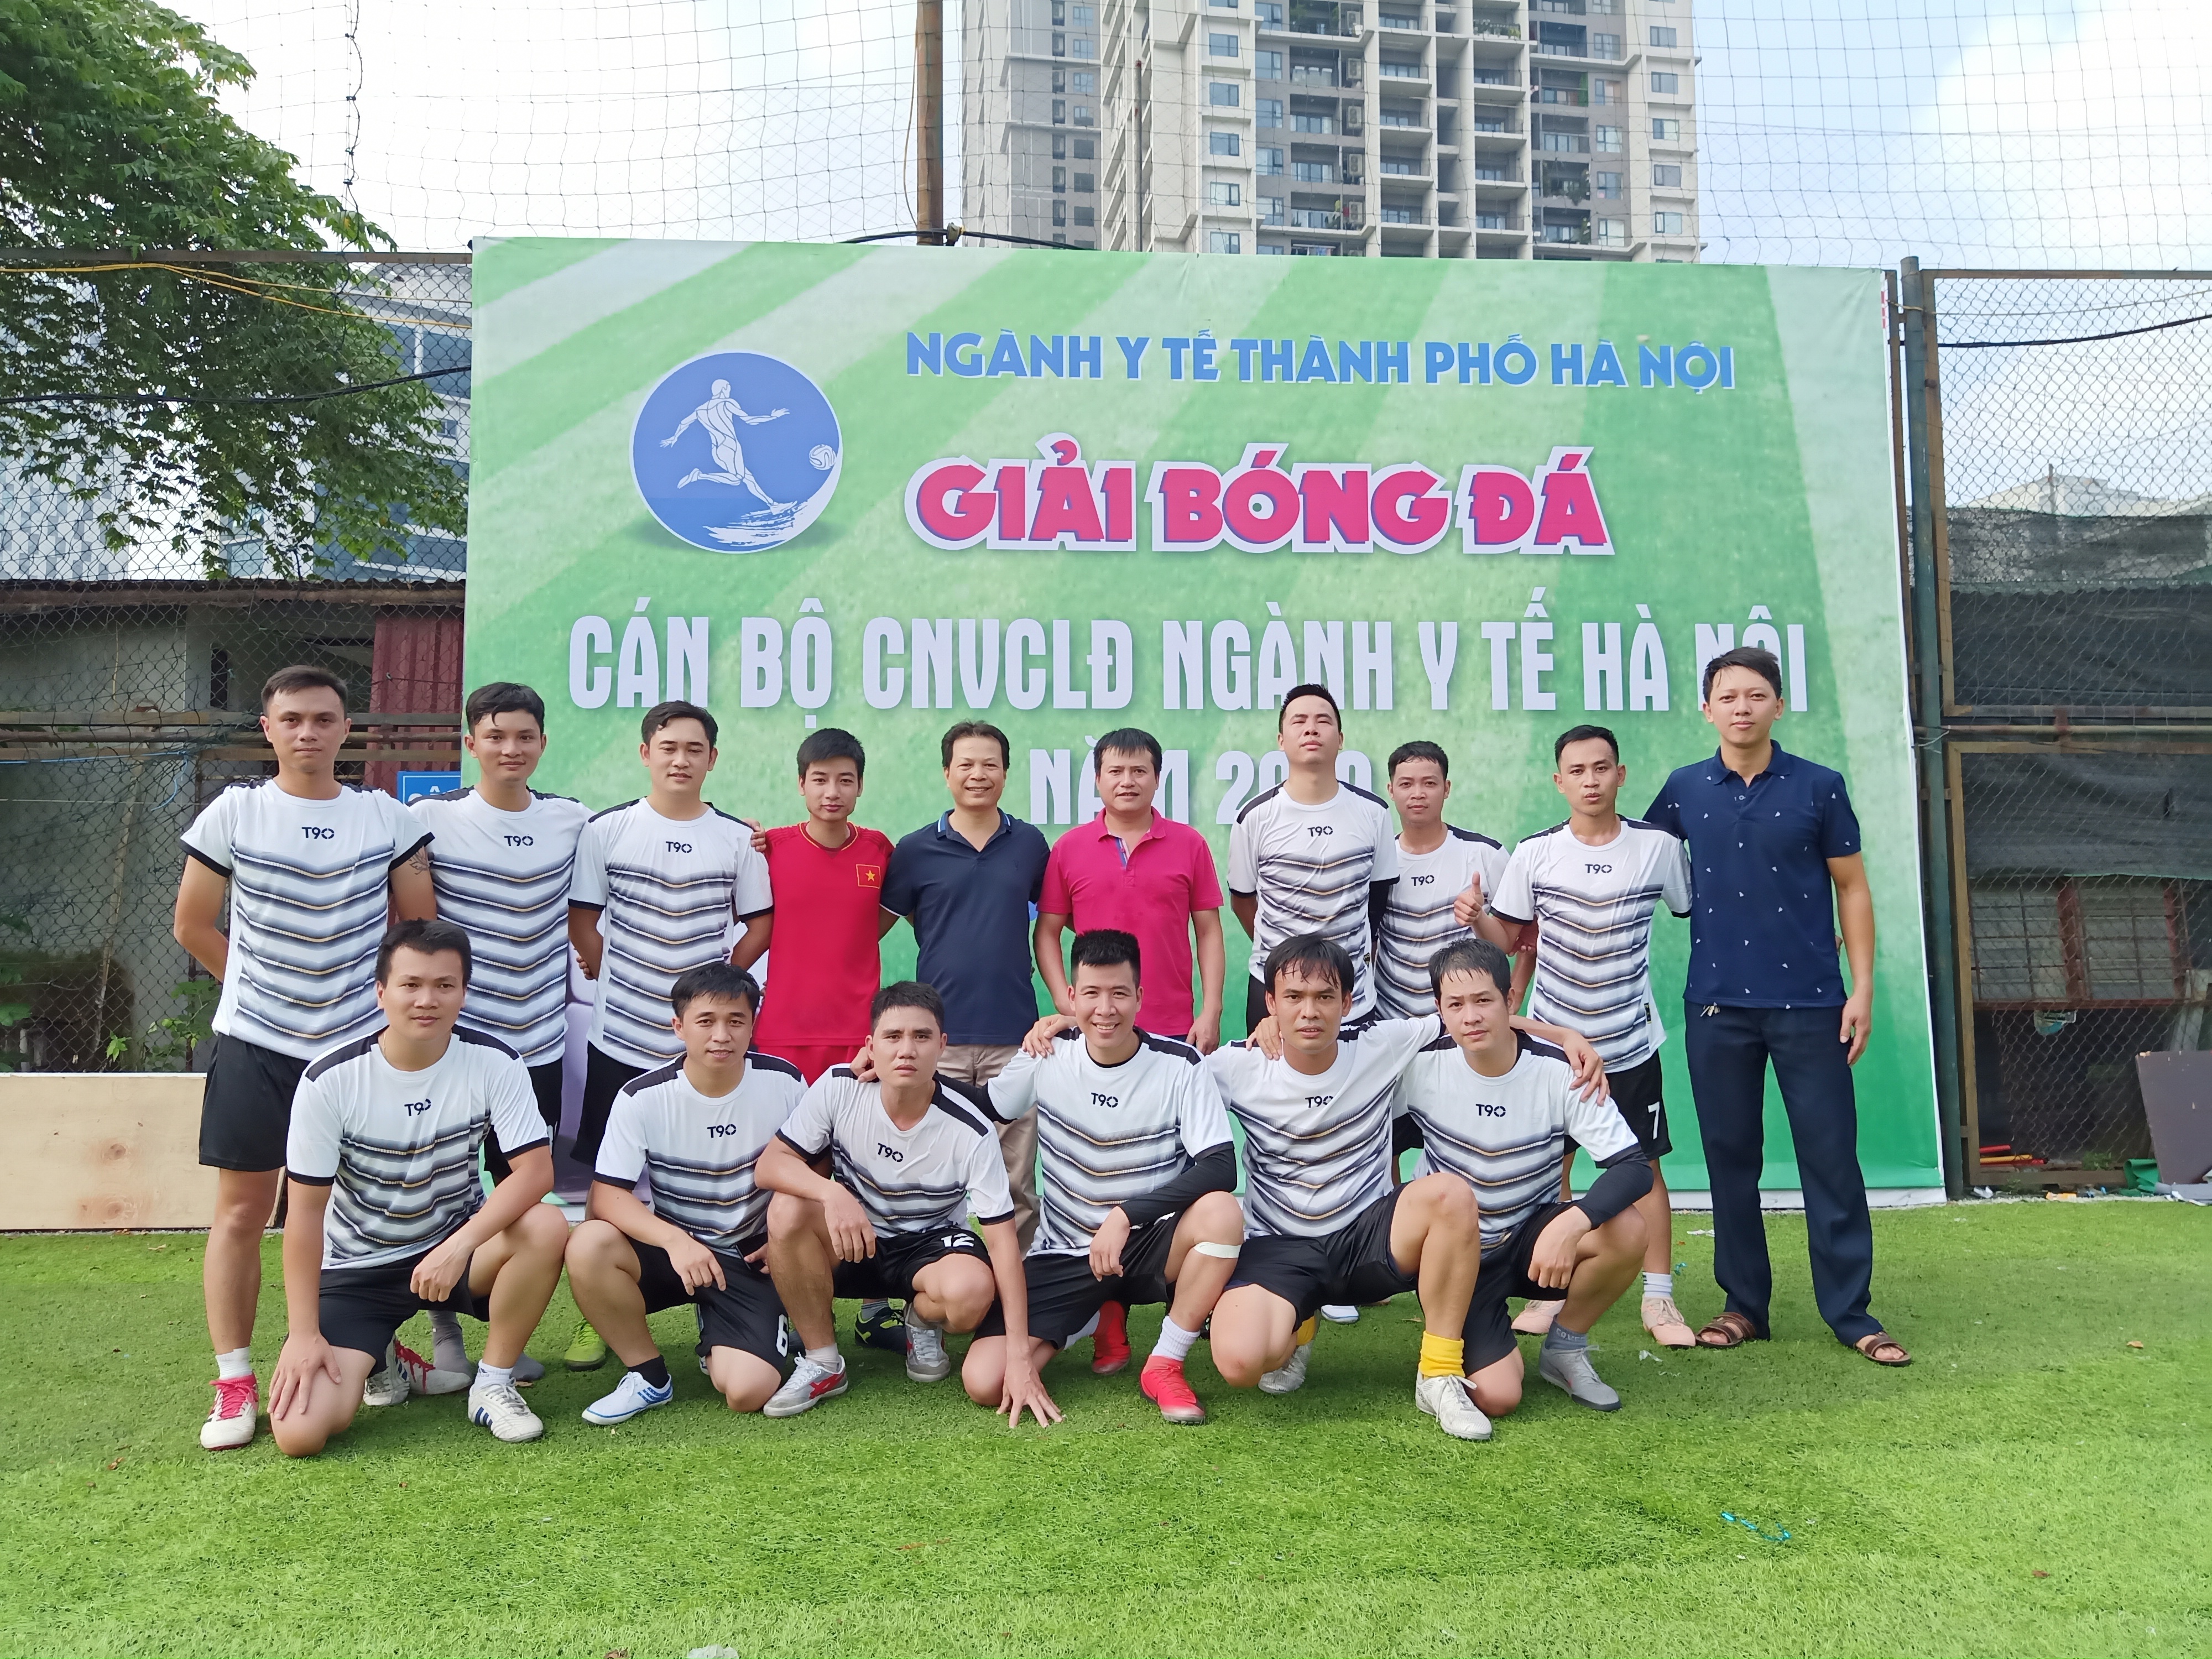 Trung tâm Kiểm soát bệnh tật thành phố Hà Nội tham gia giải bóng đá mini toàn ngành y tế Hà Nội